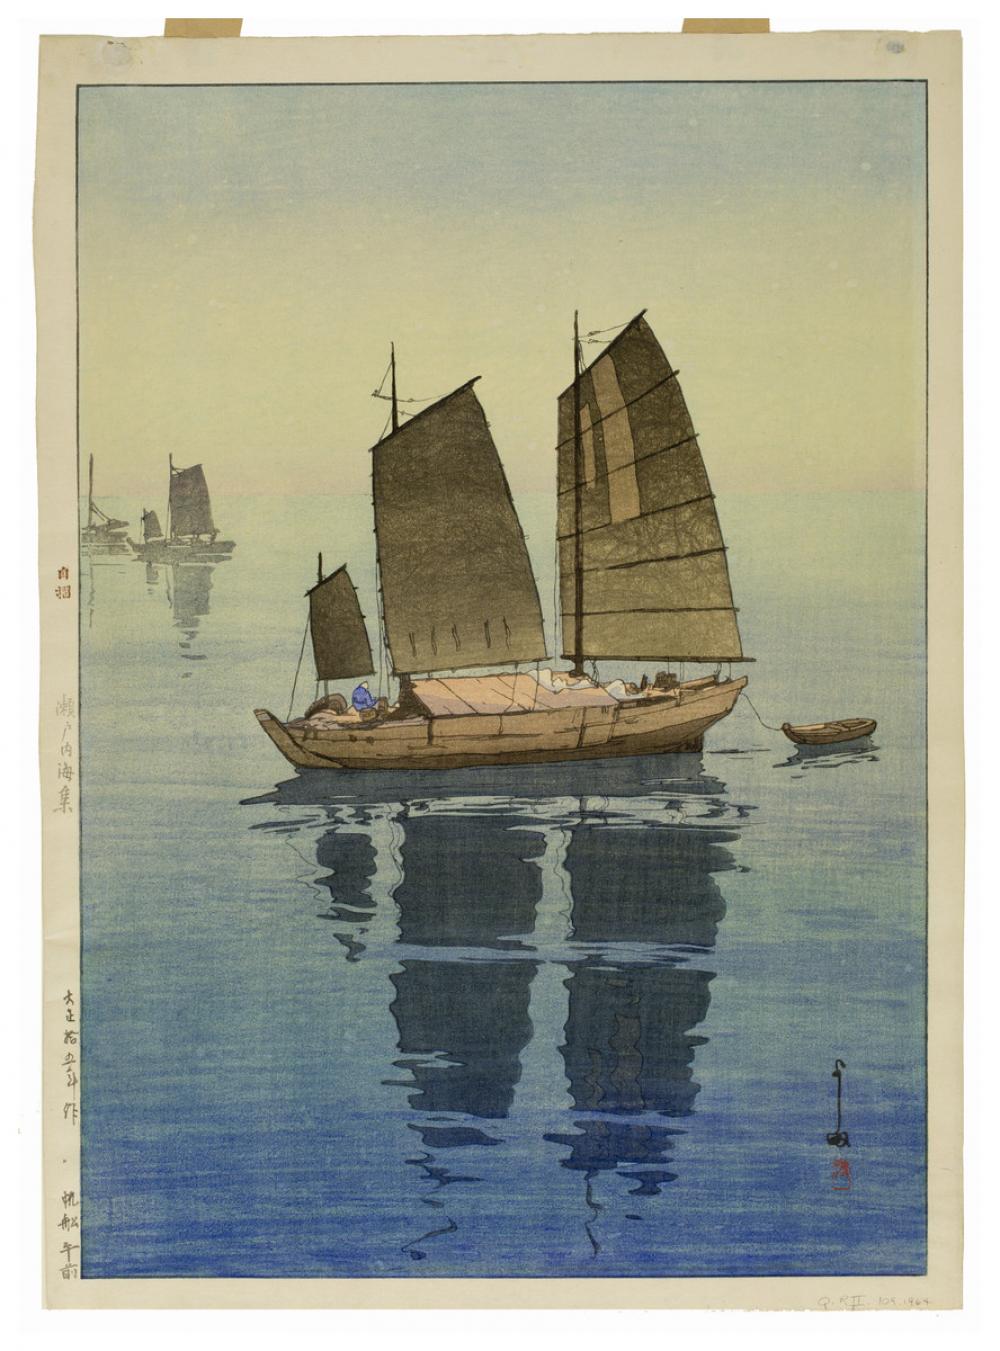 Yoshida Hiroshi (Japanese, 1876-1950), Hansen: Gozen [Sailboats: Forenoon], from the series Seto Naikai Shū [Inland Sea Collection], 1926